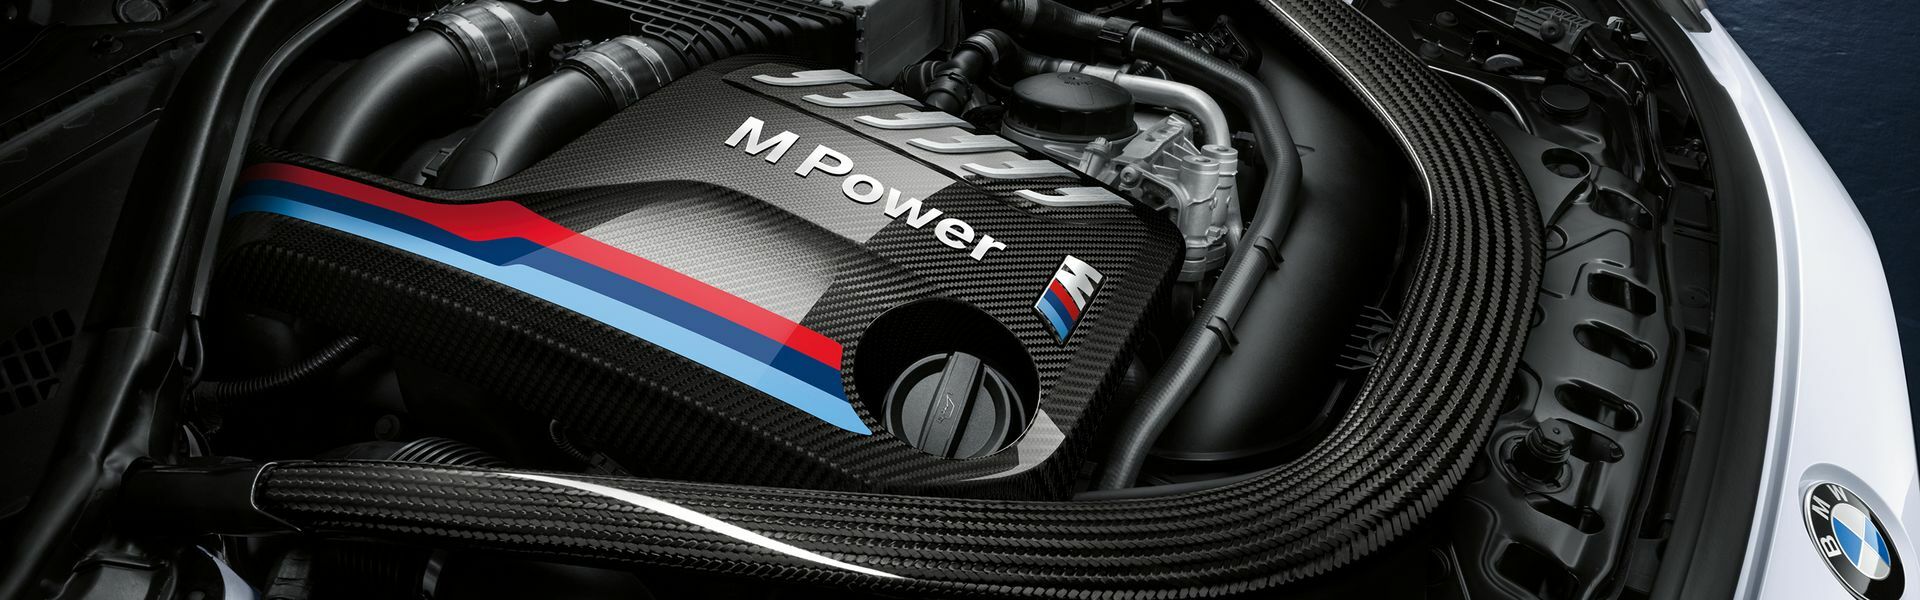 Zvýšení výkonu/ Softwarové úpravy/ Drobné performance díly pro automobil Mercedes Coupé GT / GT S / GT C